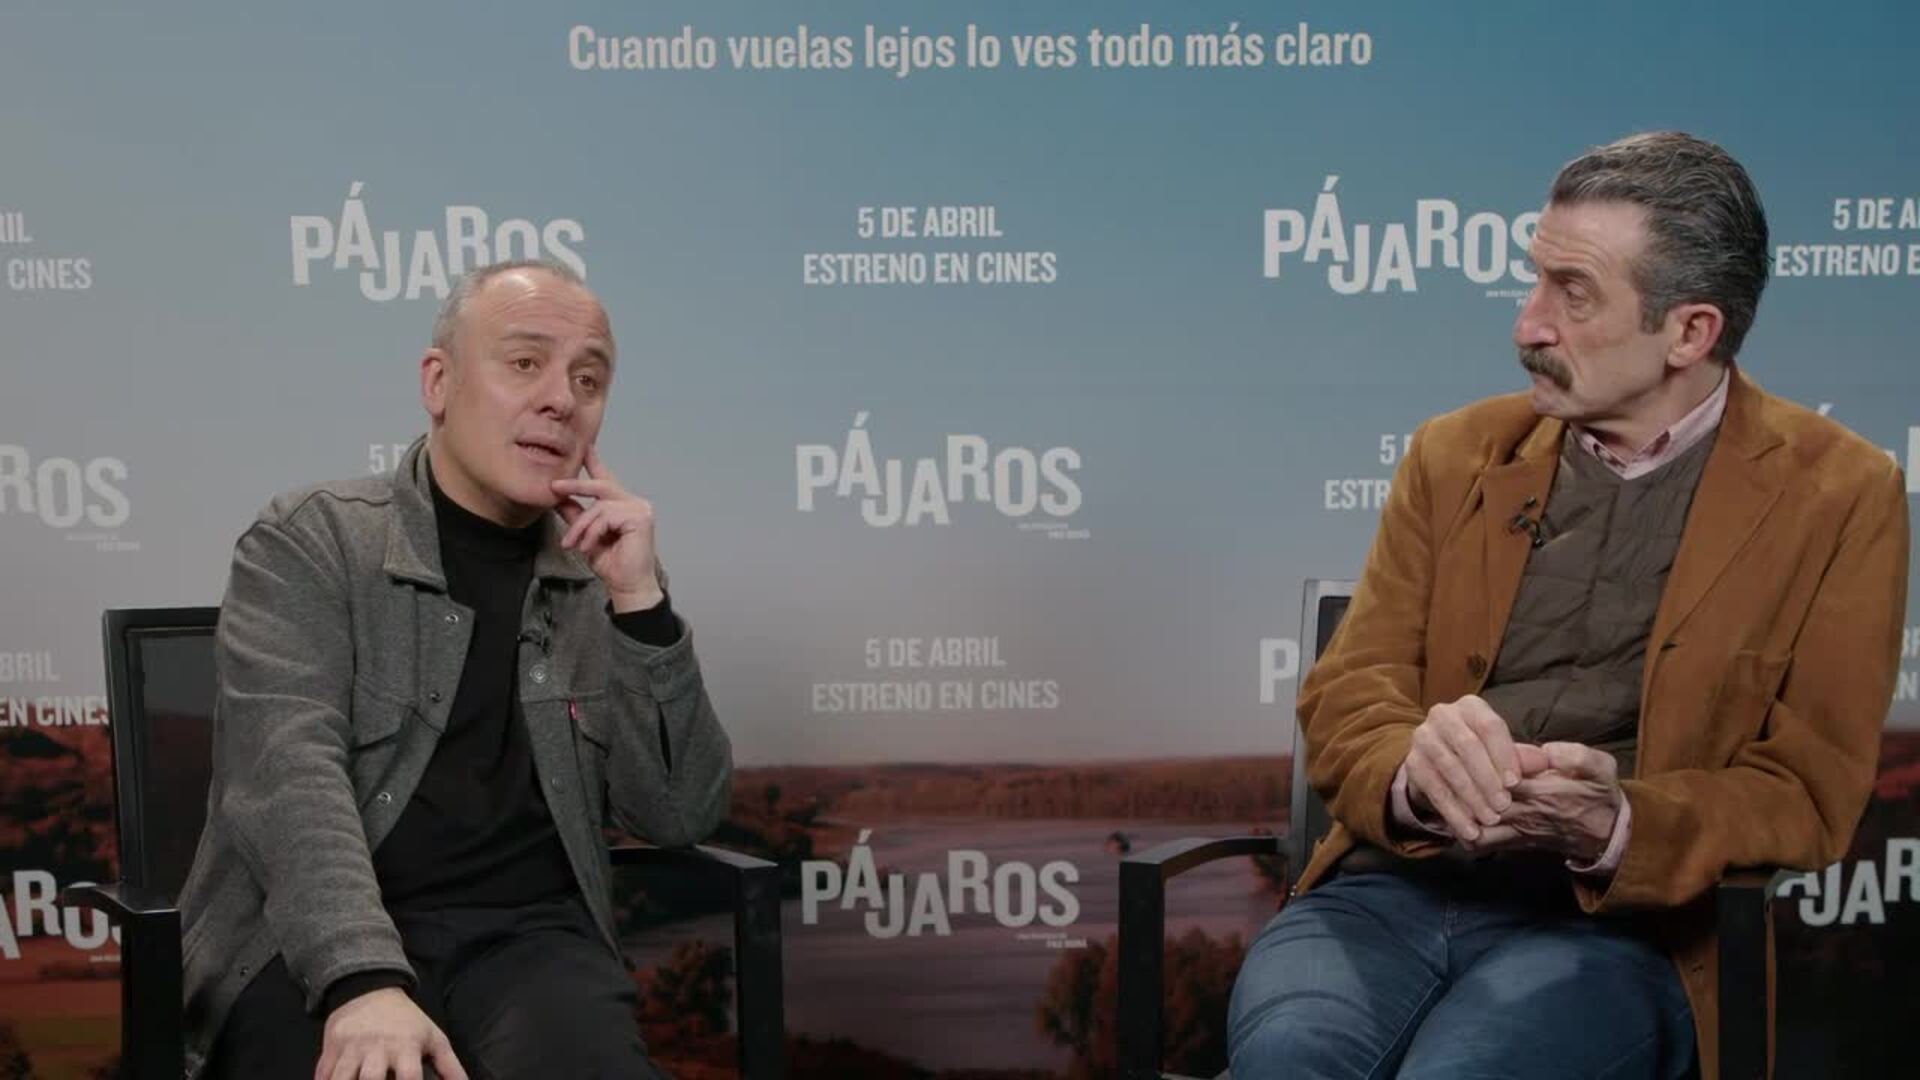 Javier Gutiérrez y Luis Zahera piden más "cine político" en España